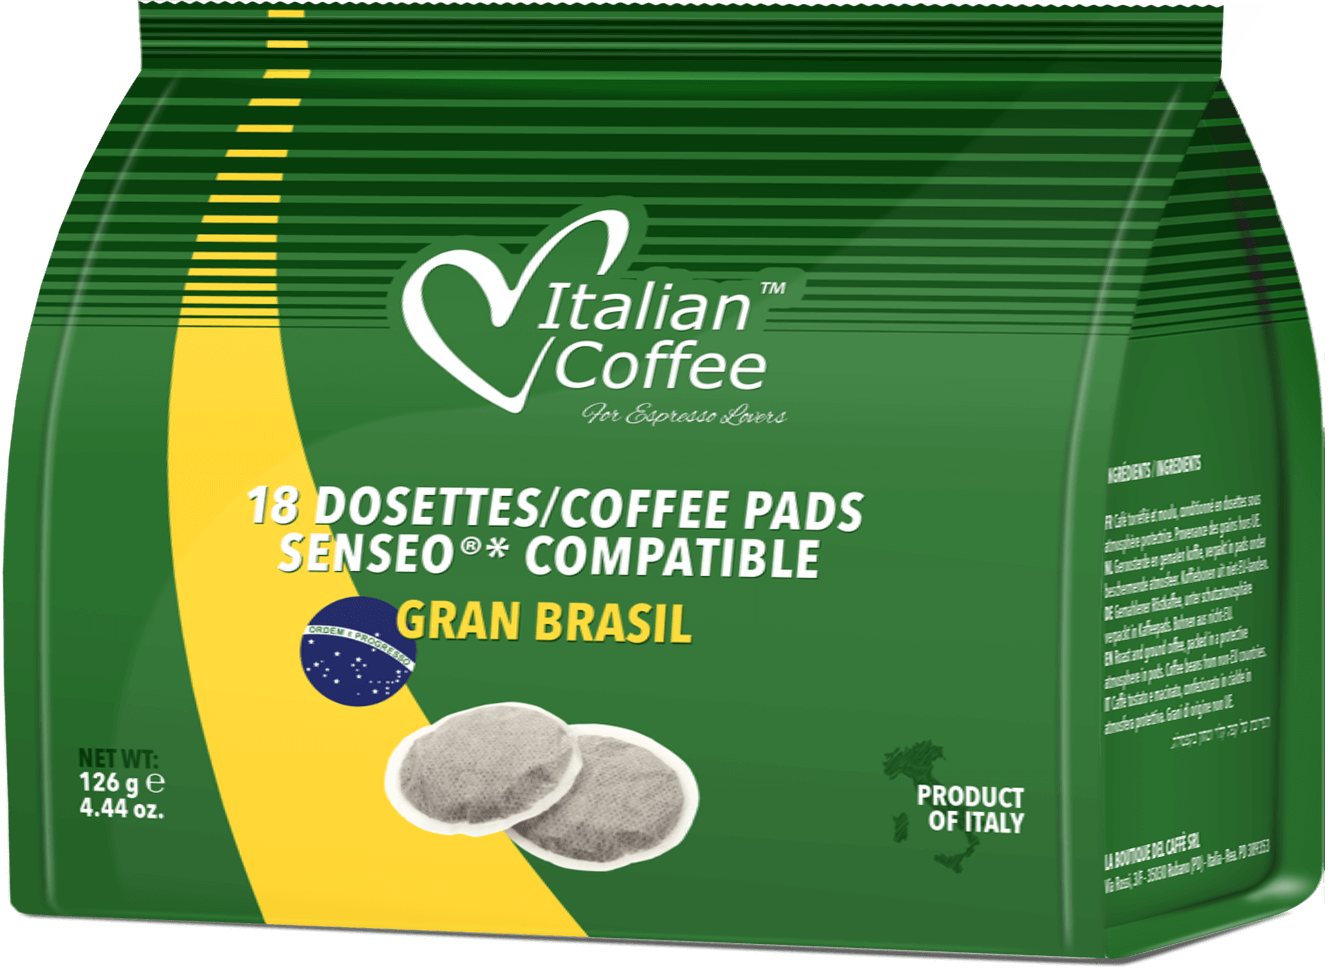 ITALIAN COFFEE® Senseo Gran Brasil